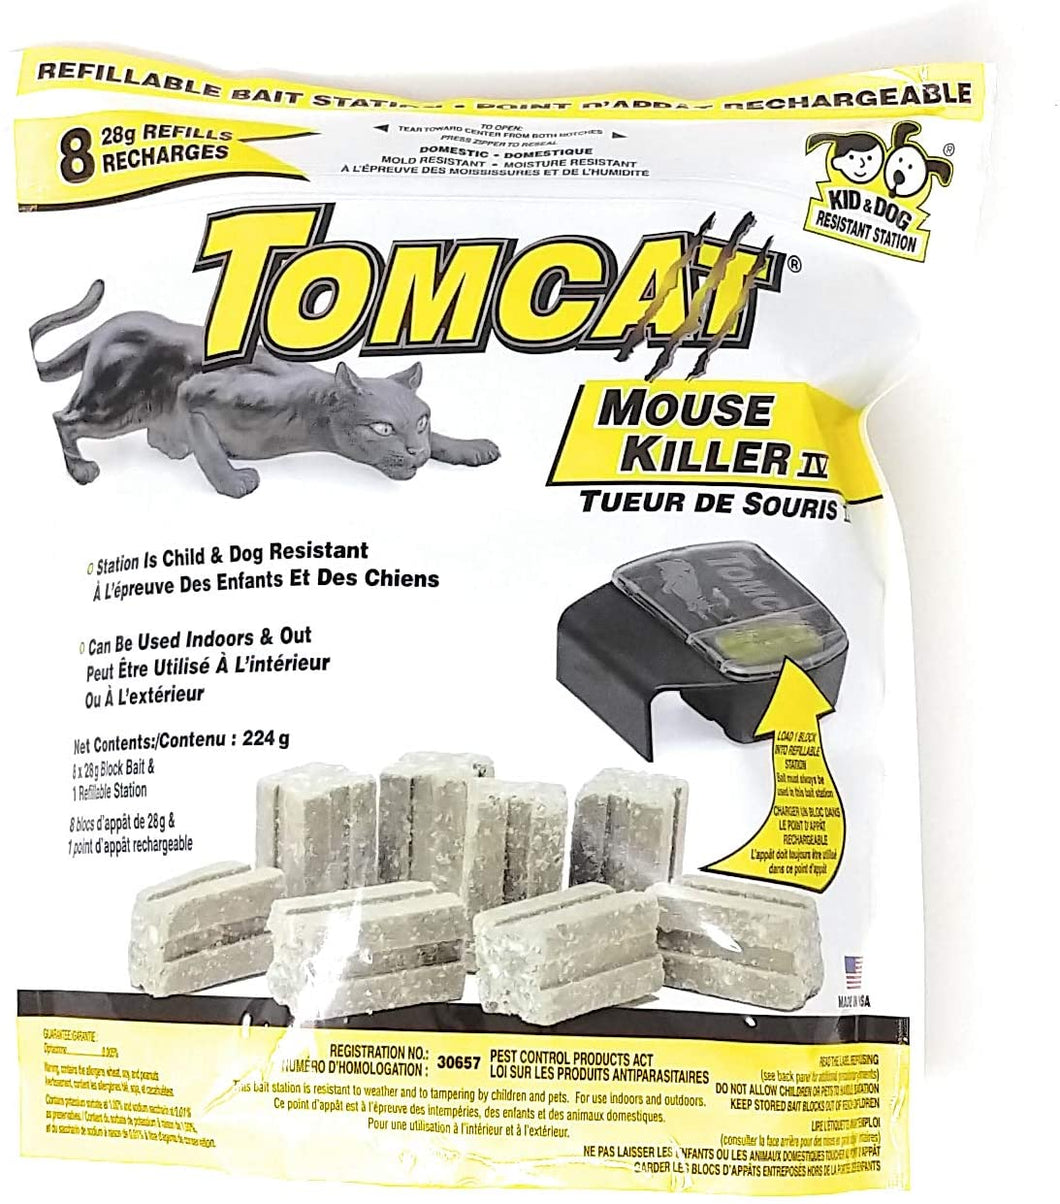 CHS Motomco Tomcat Mouse Killer IV Refillable Bait Station 